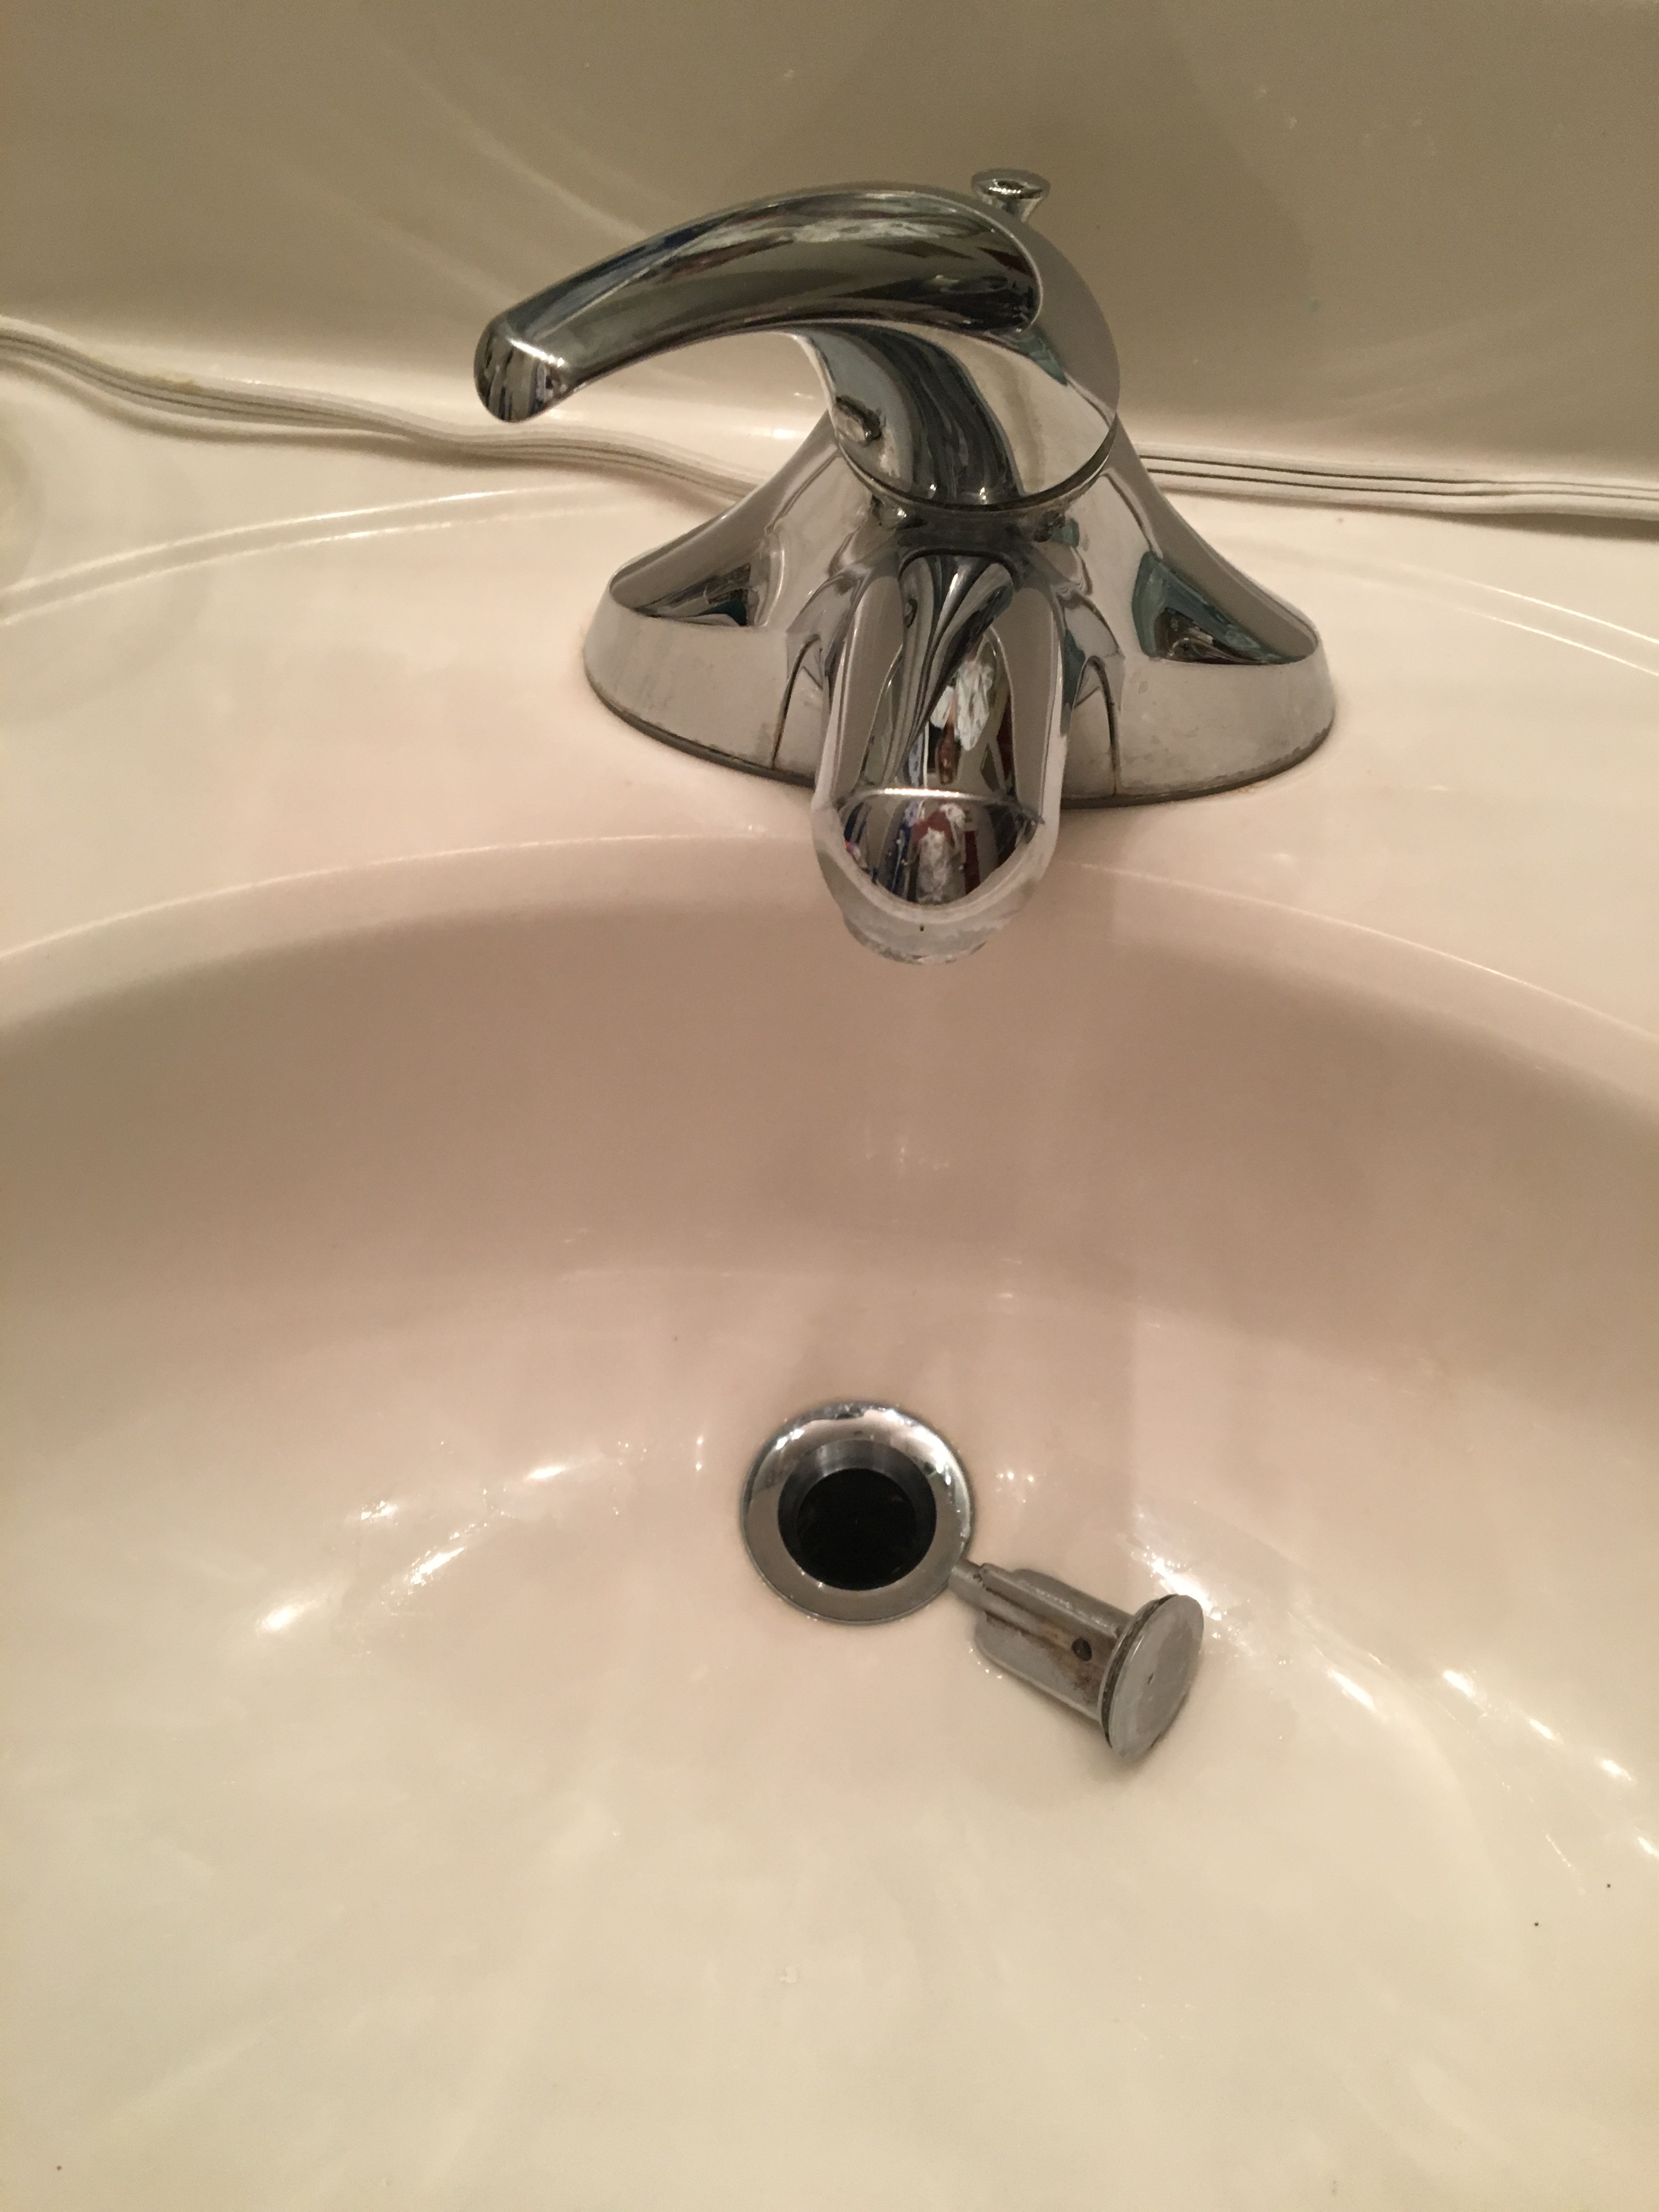 Sink Shroom Quick Fix For Broken Bathroom Sink Stopper And Clog